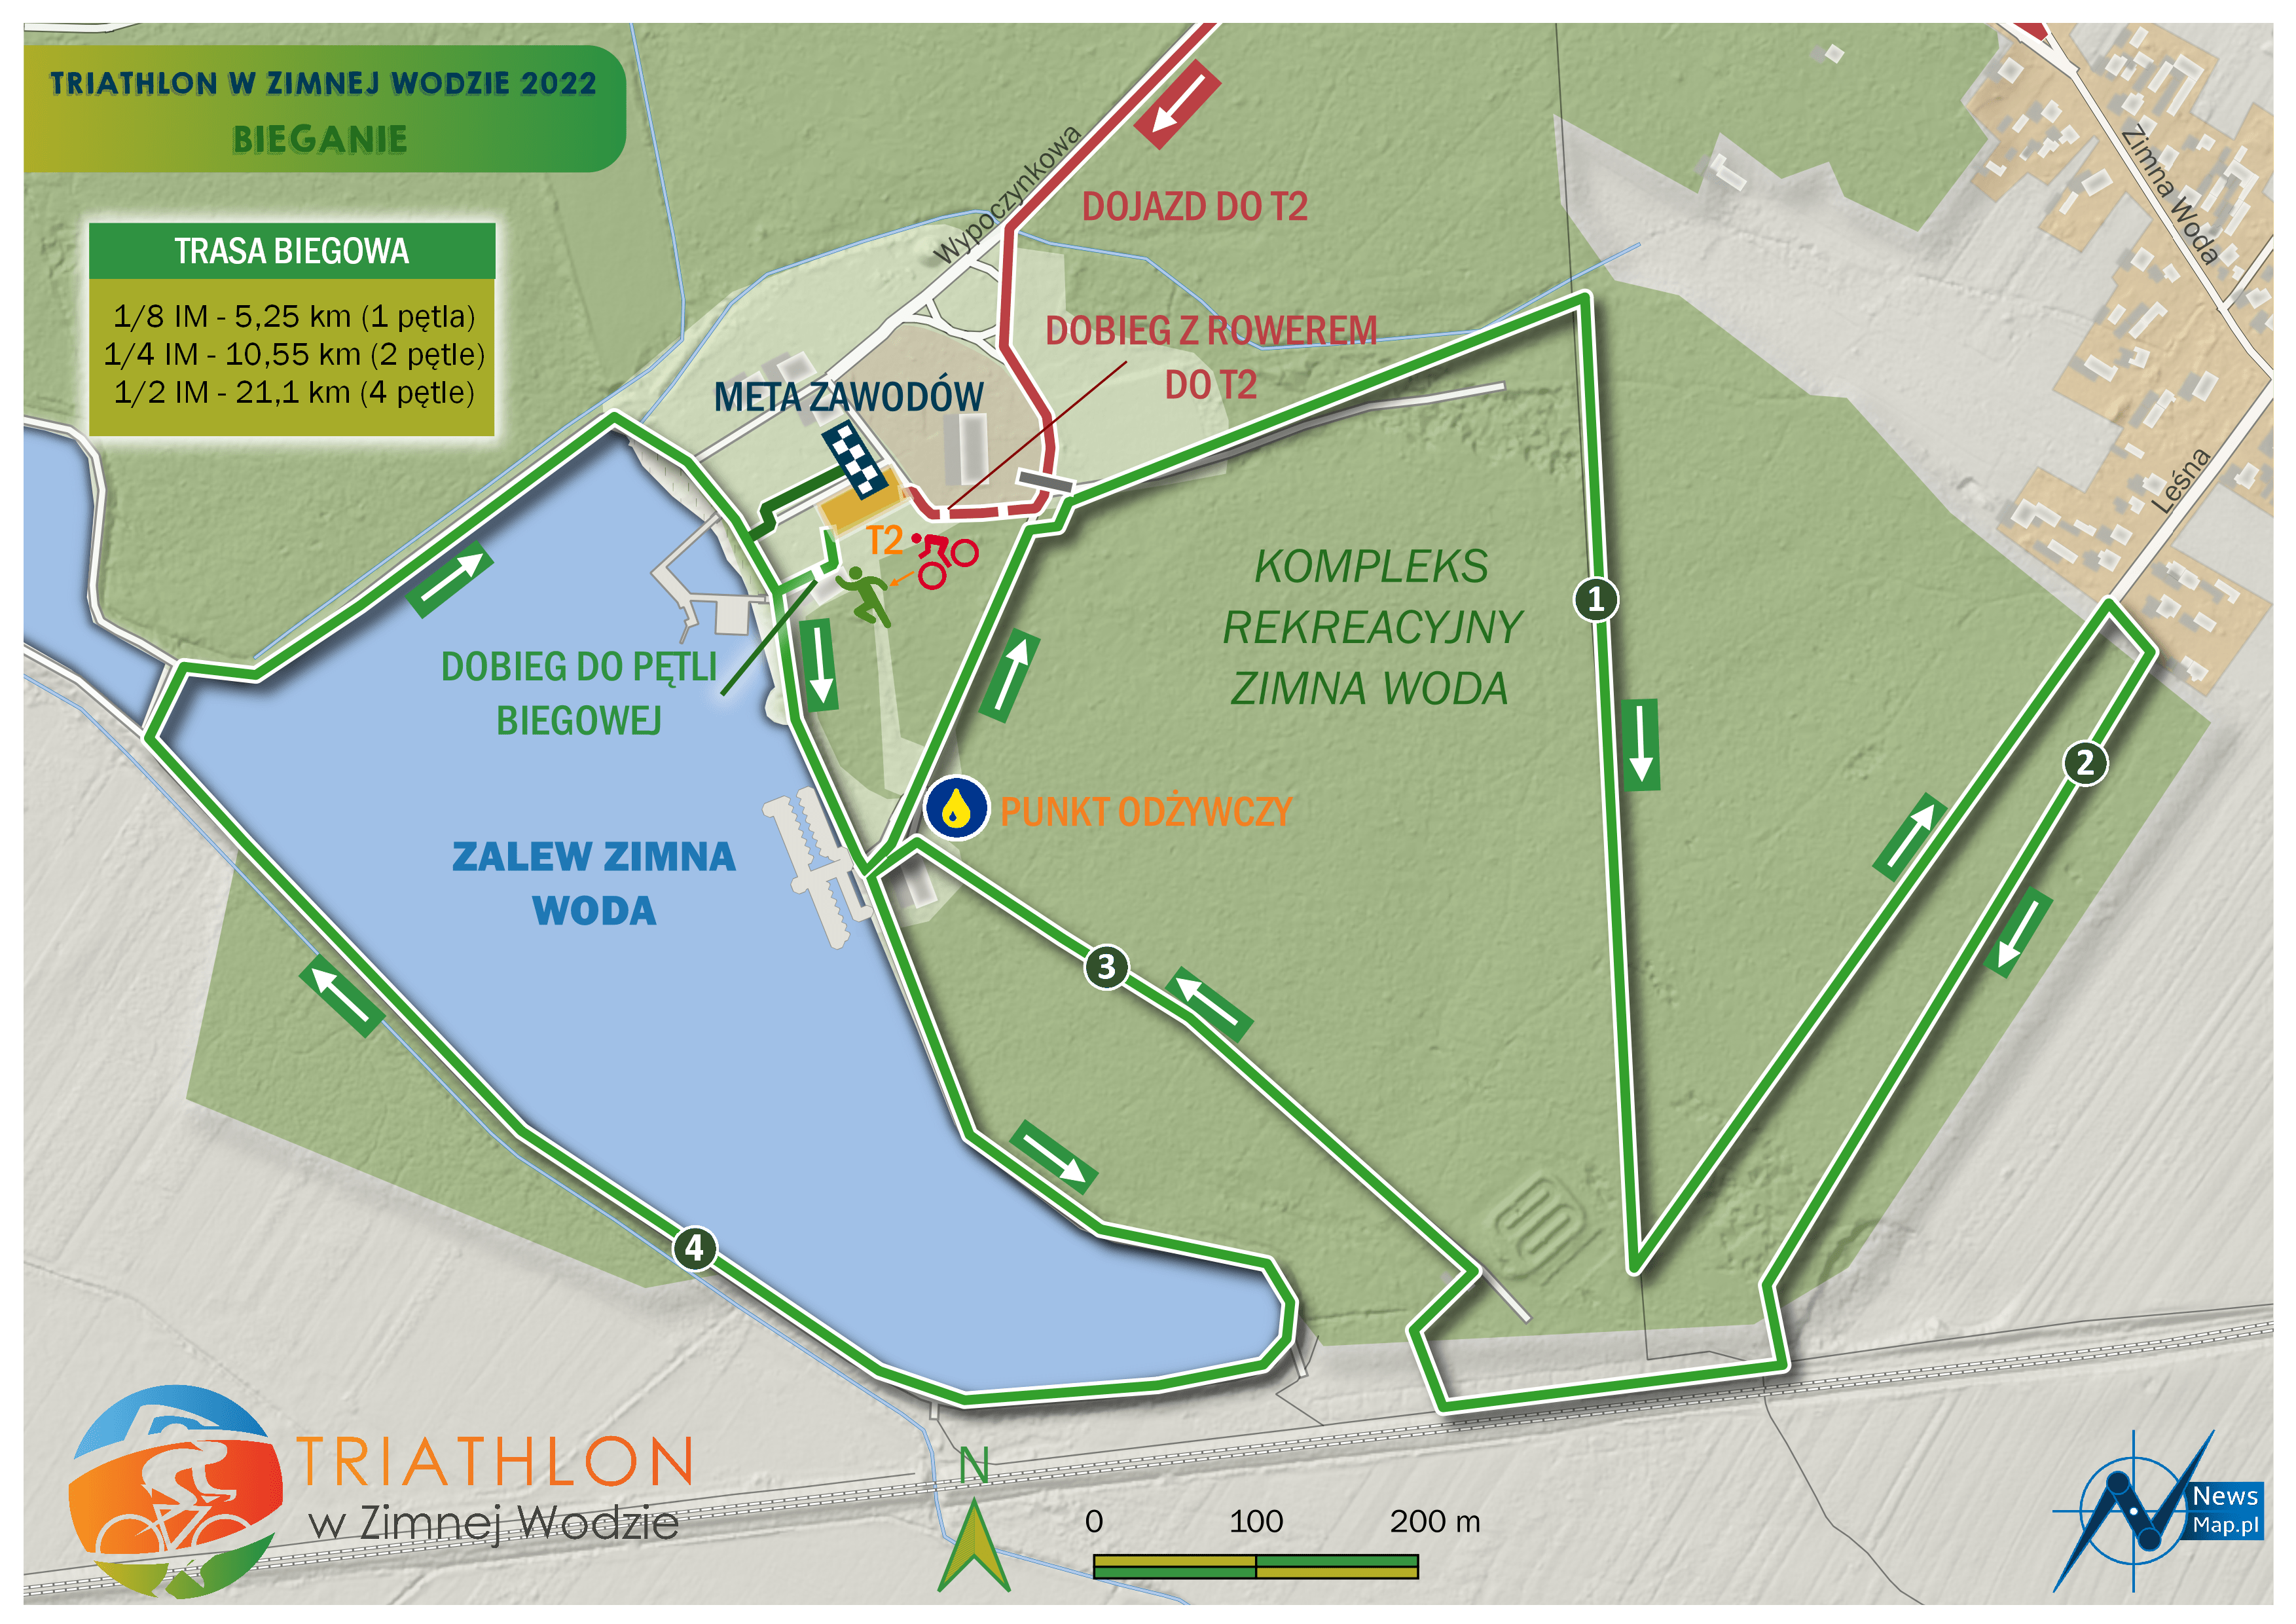 Mapa statyczna Triathlon w Zimnej Wodzie 2022 - bieganie (on-line)